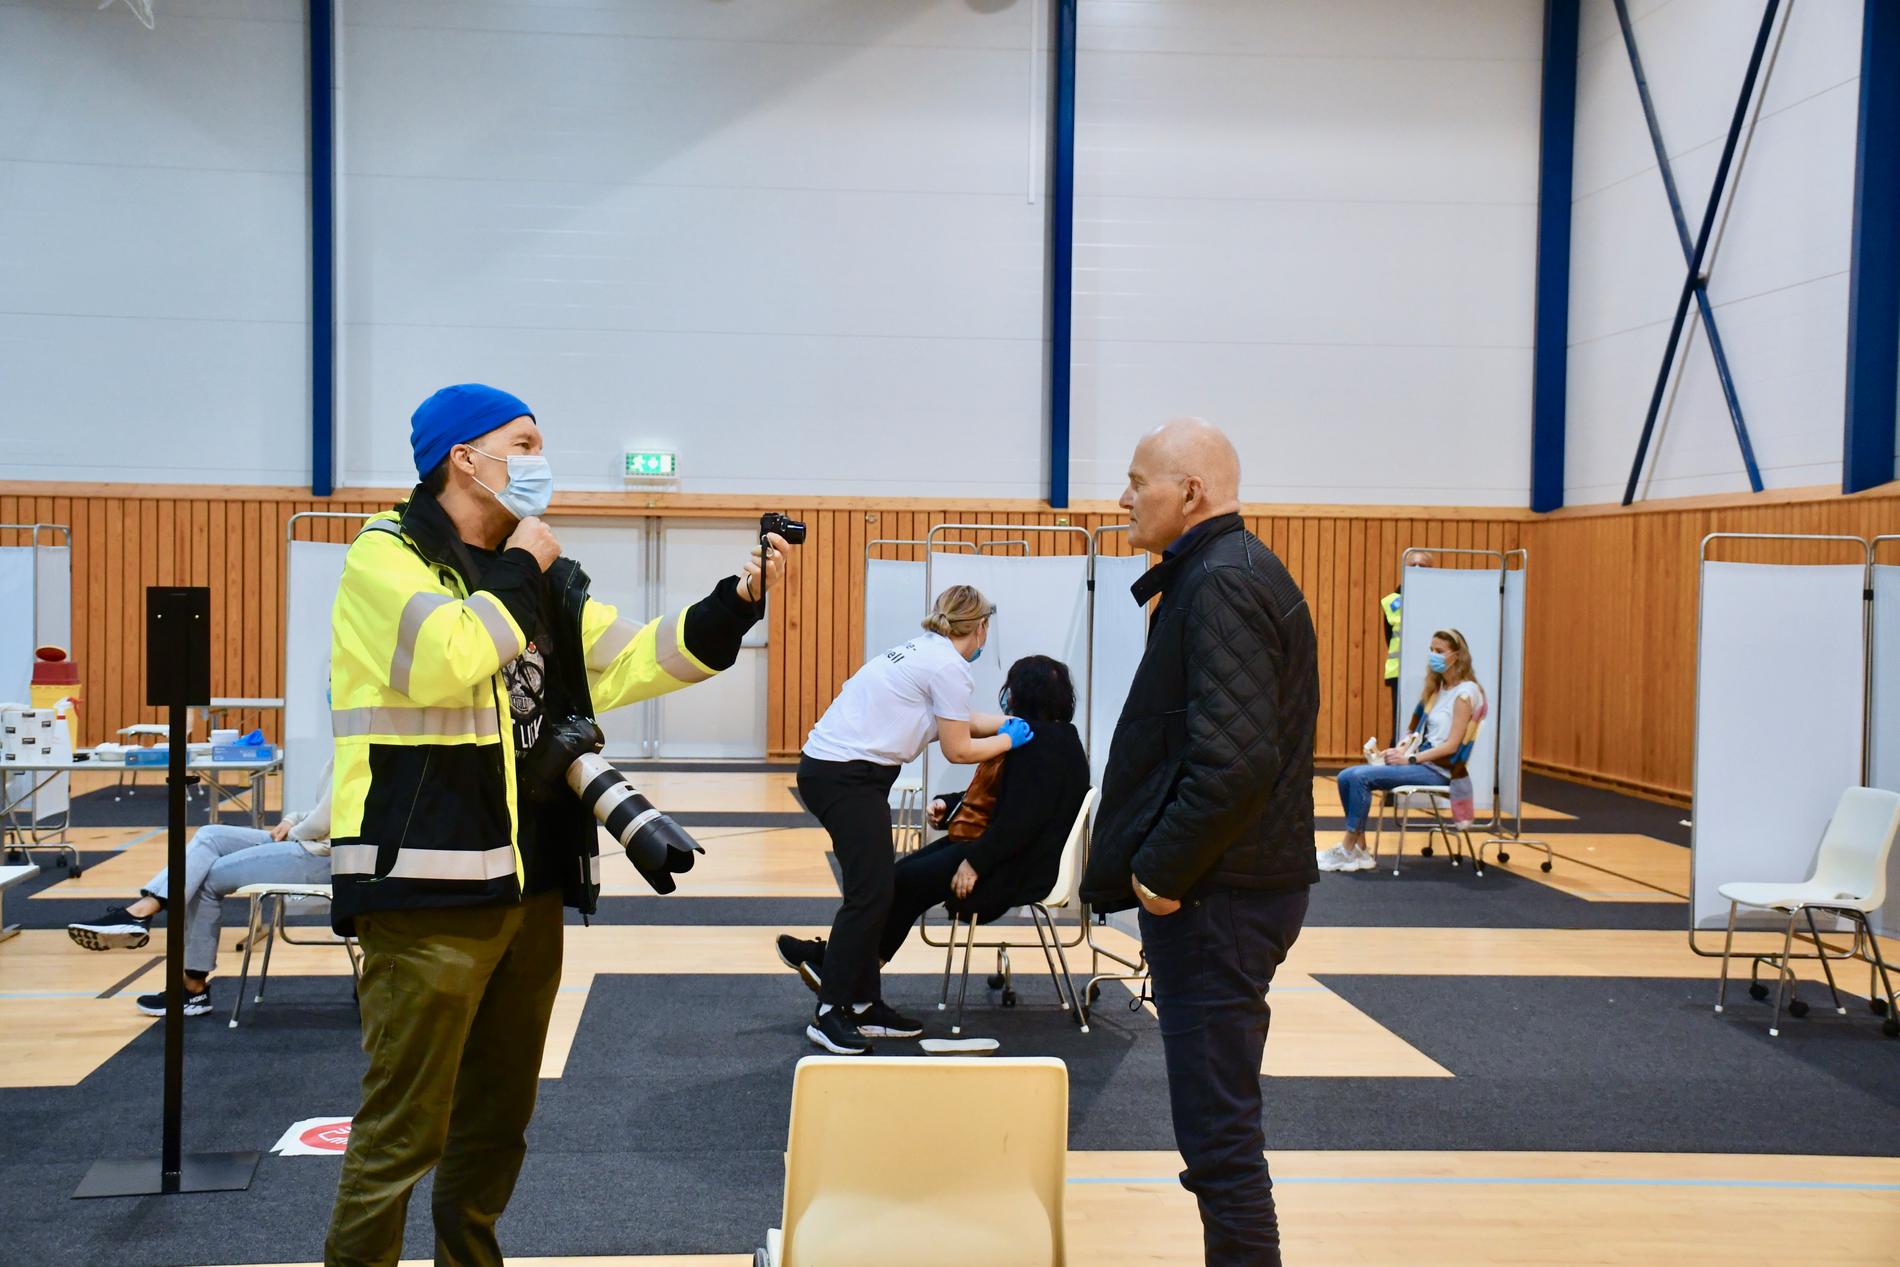  Kommuneoverlege Ole Bernt Lenning blir intervjuet av kommunens Ove Tennfjord i forbindelse med massevaksinering som var i Randaberghallen, hall 2. 